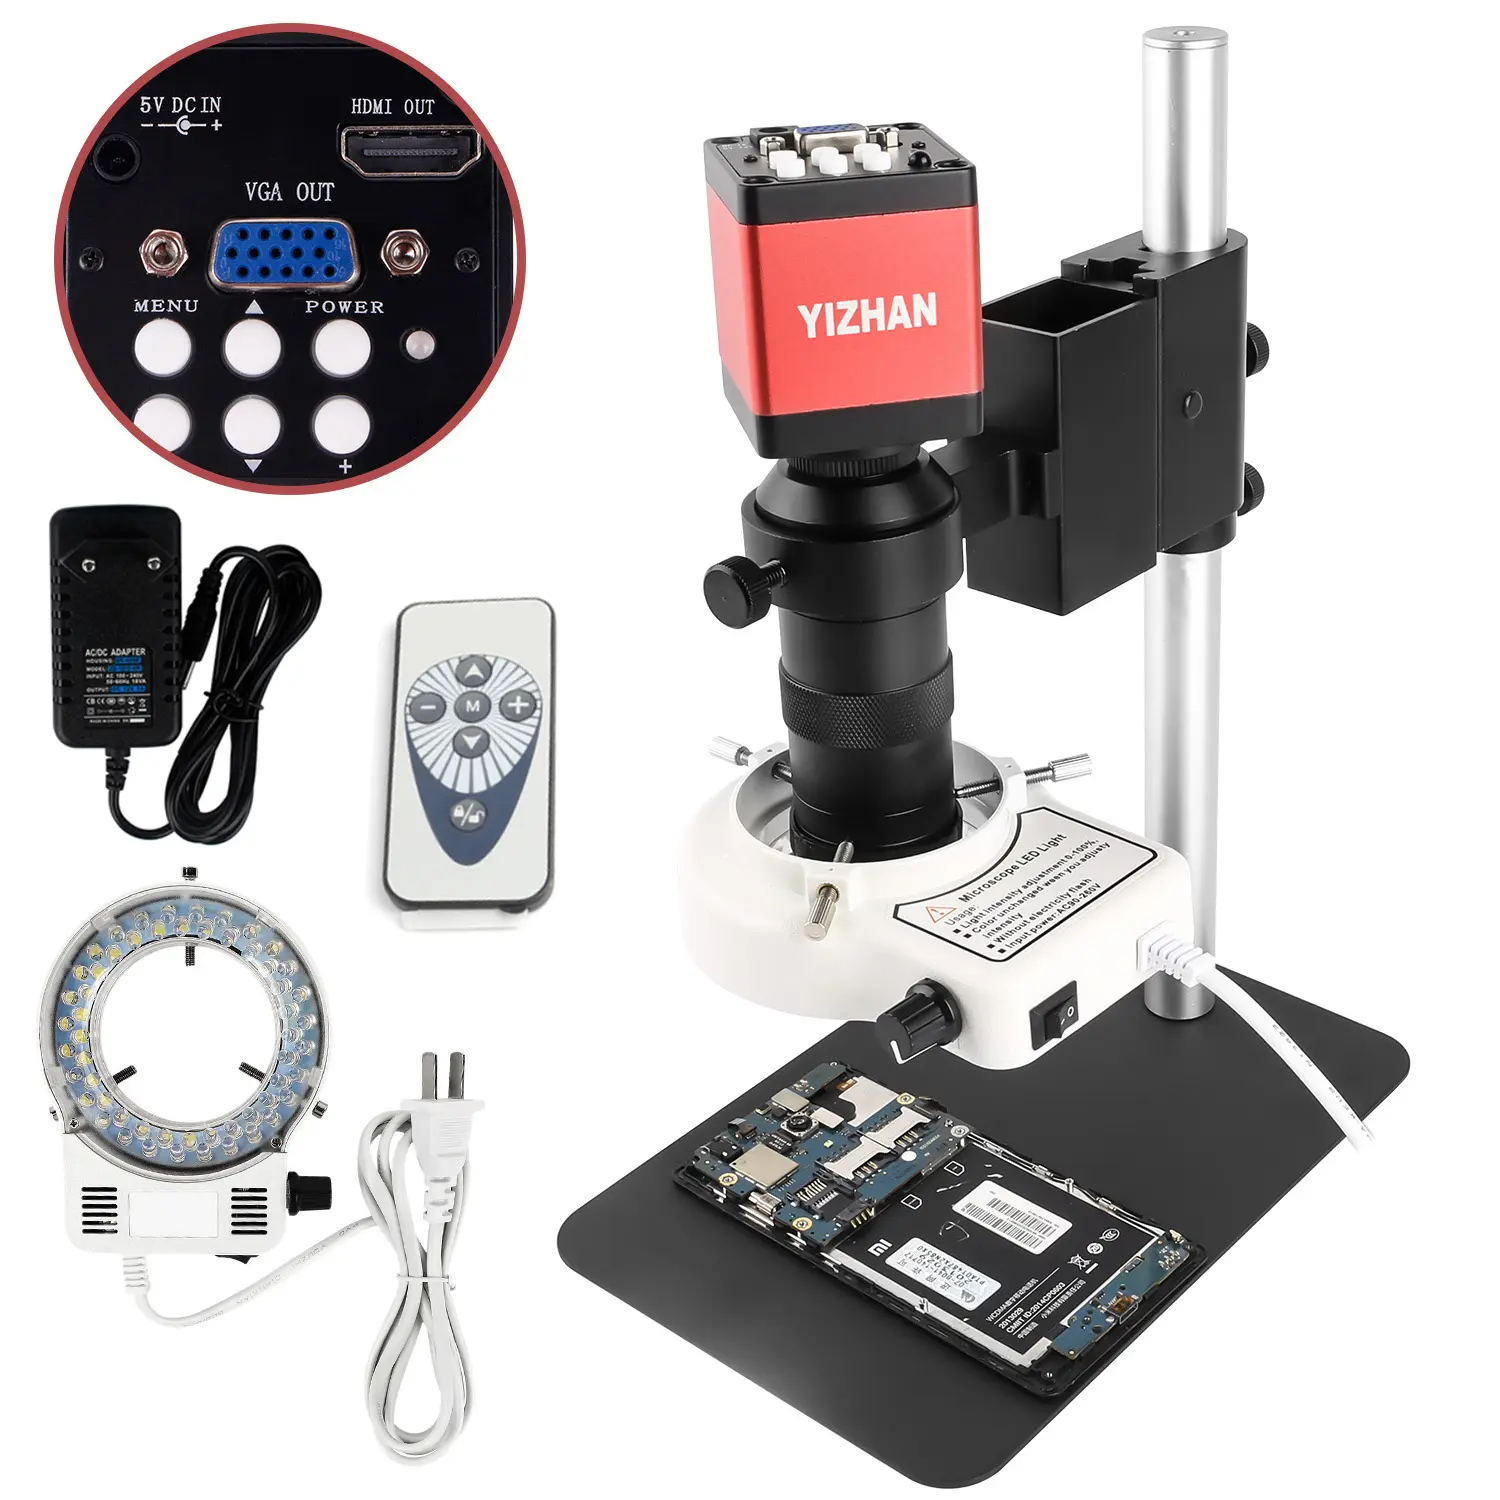 130X HD Zoom Mobile riparazione digitale microscopio da laboratorio elettronico VGA 2MP fotocamera con anello LED luce uso industriale